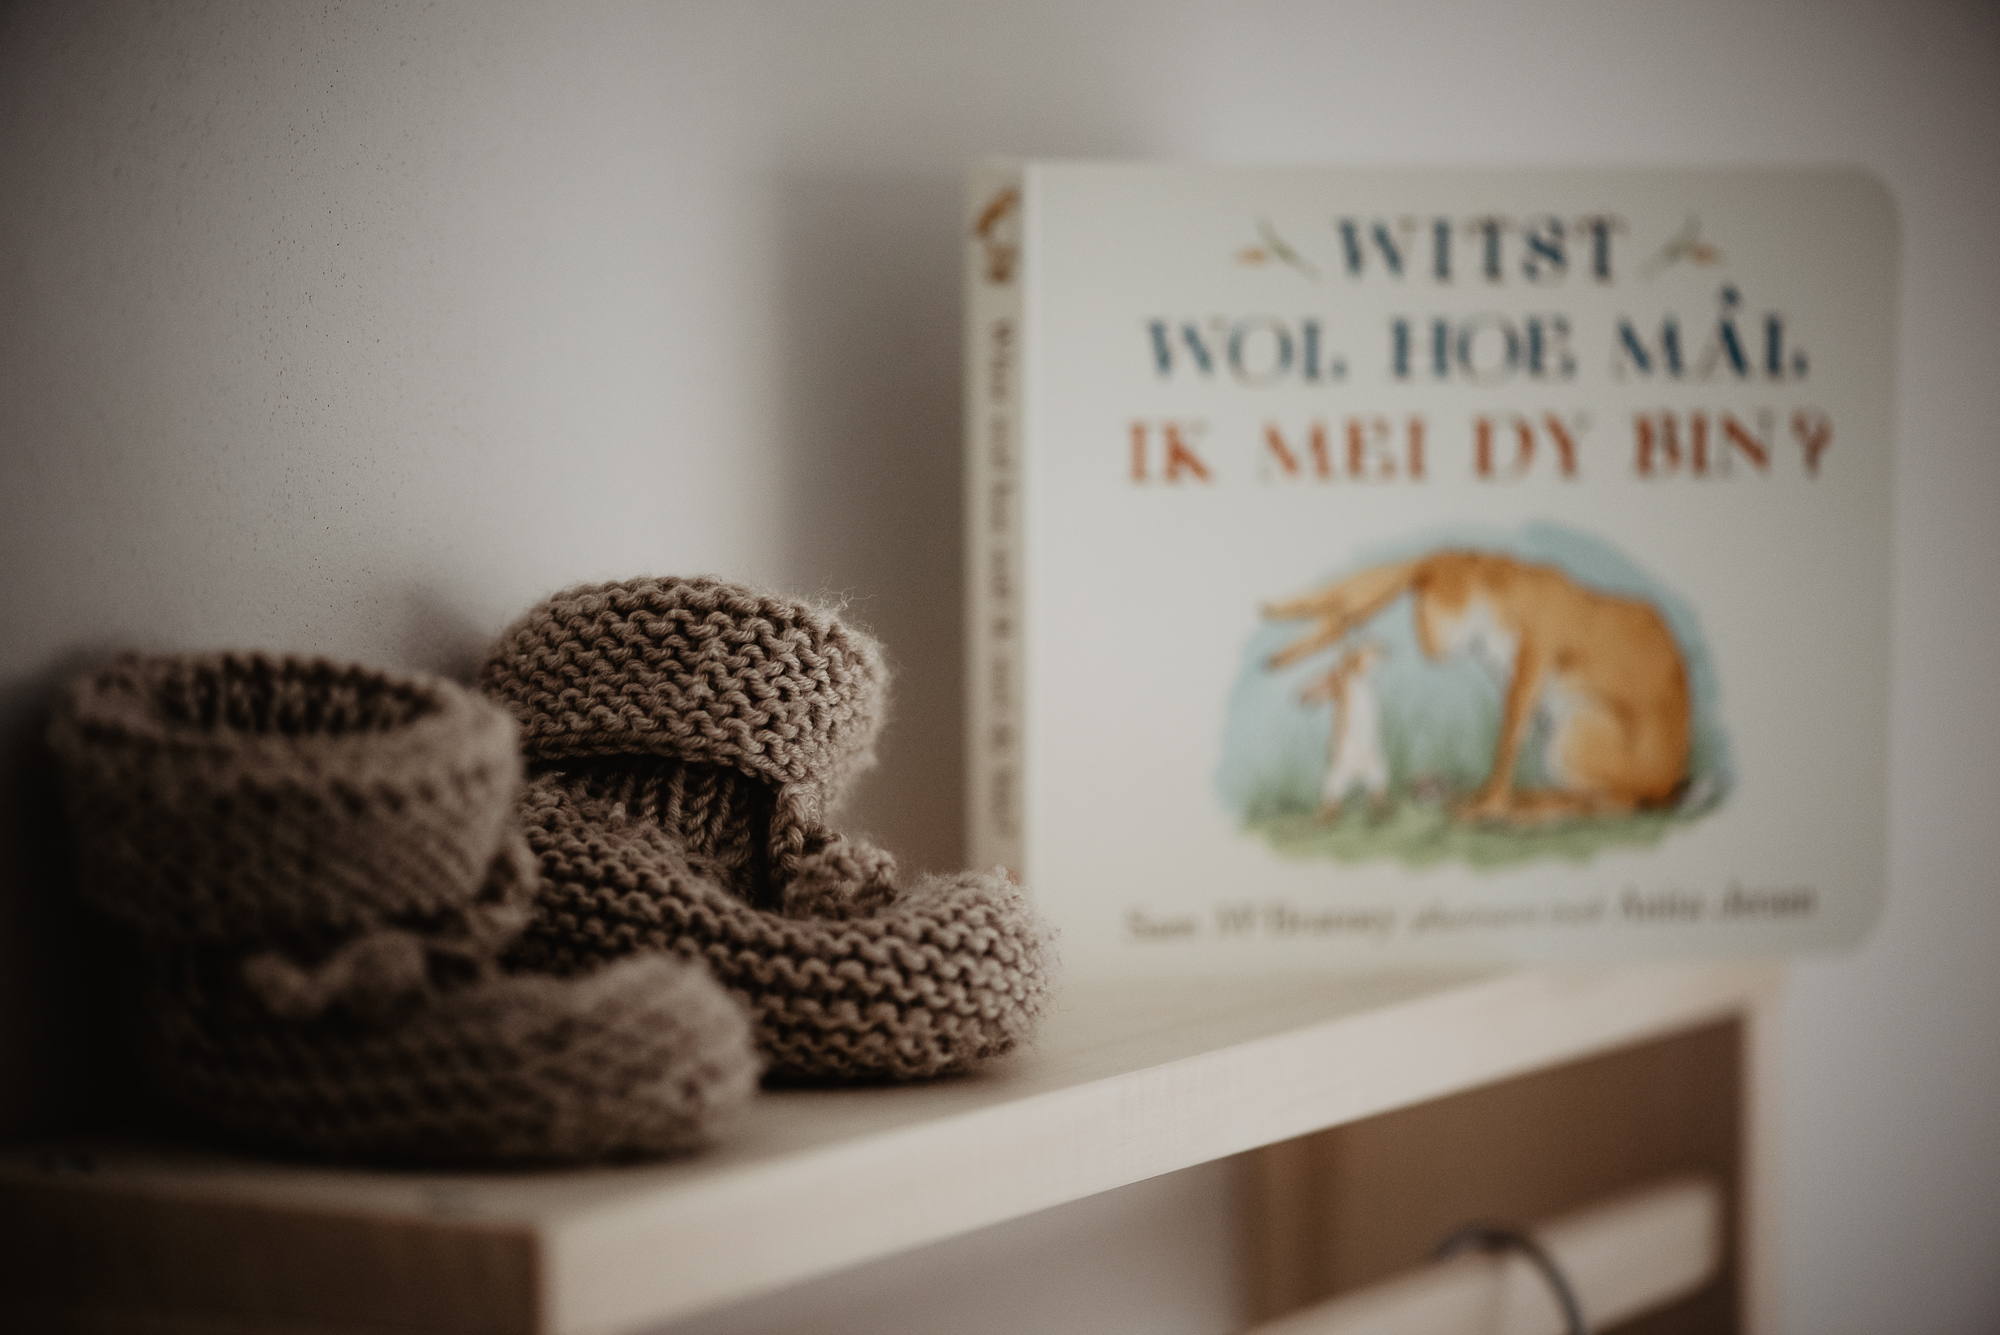 Gebreide babyslofjes bij Winnie de Poeh boekje. Fotoreportage door fotograaf Nickie Fotografie uit Dokkum, Friesland.